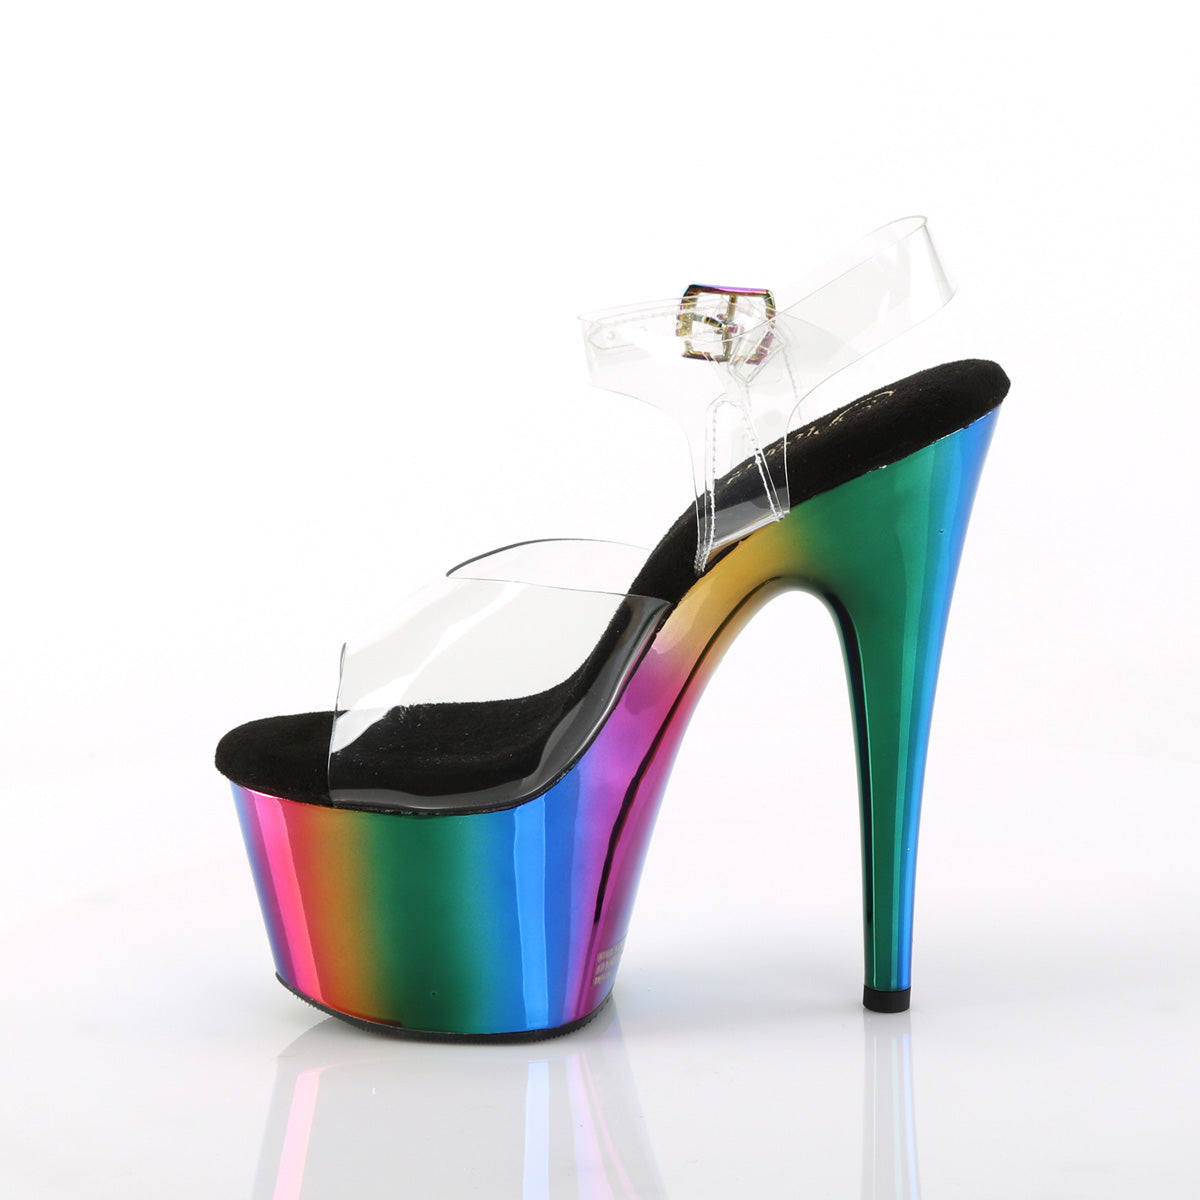 Pleaser Womens Sandals ADORE-708RC Clr/Rainbow Chrome